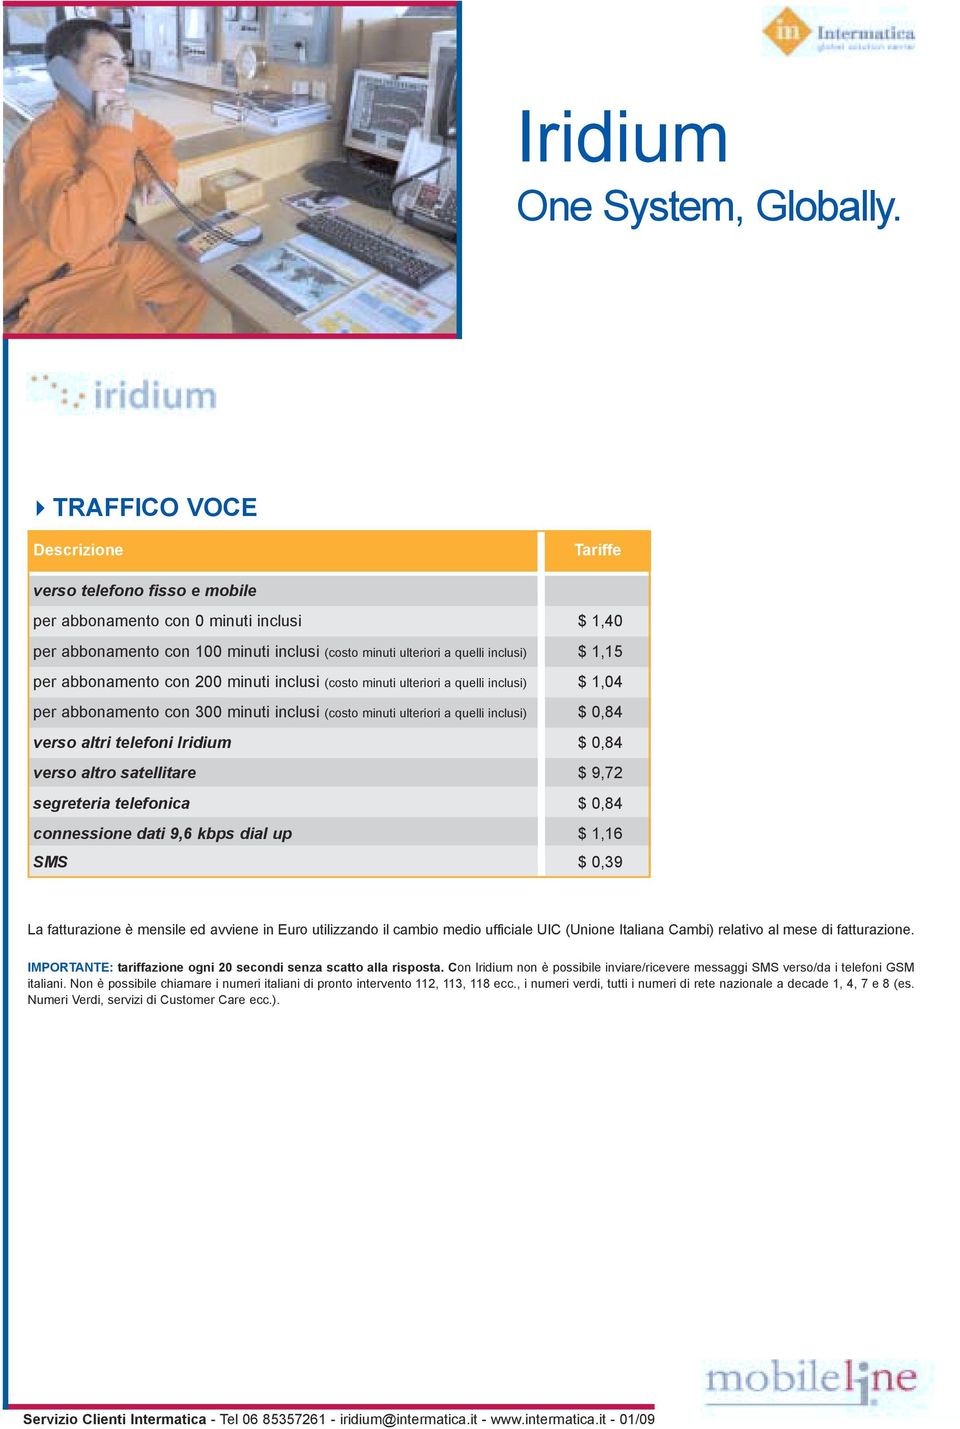 Iridium $ 0,84 verso altro satellitare $ 9,72 segreteria telefonica $ 0,84 connessione dati 9,6 kbps dial up $ 1,16 SMS $ 0,39 La fatturazione è mensile ed avviene in Euro utilizzando il cambio medio